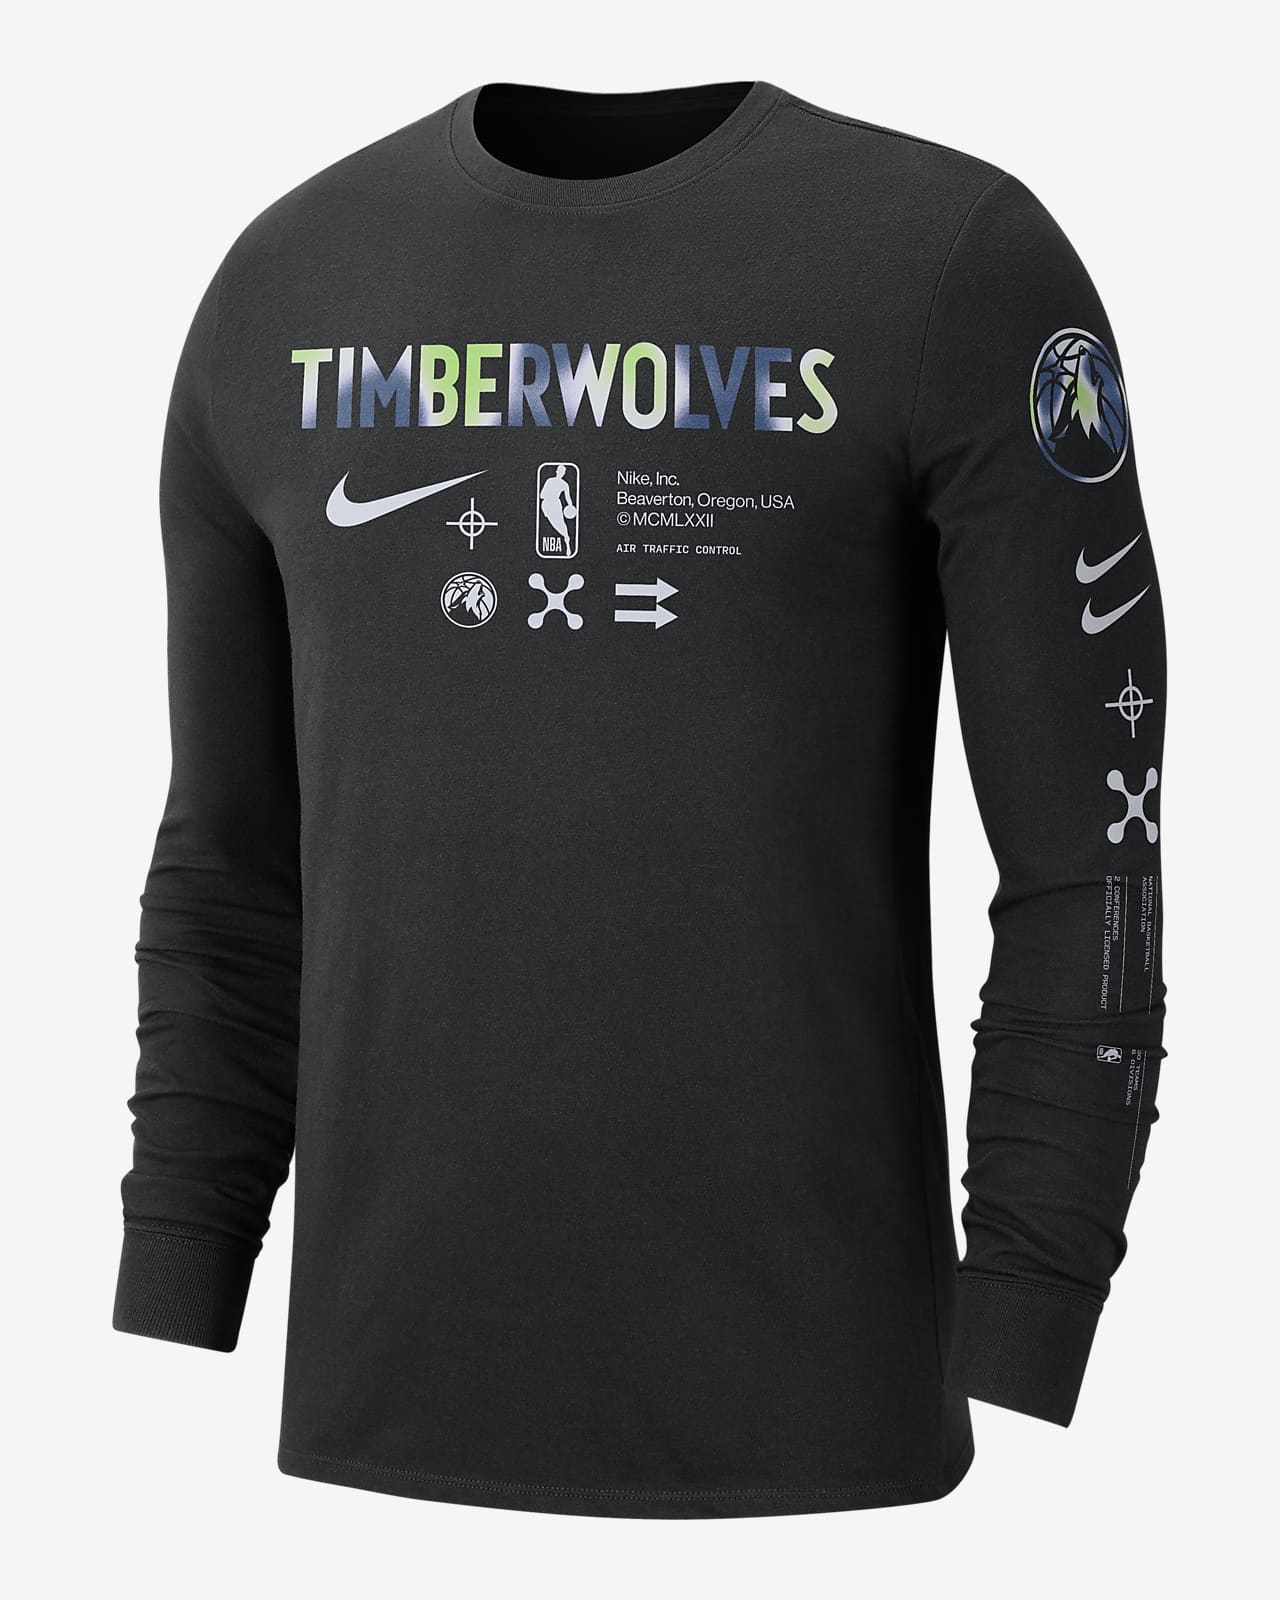 Minnesota Timberwolves Nike NBA Authentics Dri-Fit Long Sleeve Shirt Men's New Navy/Blue 3xlt 3xlt